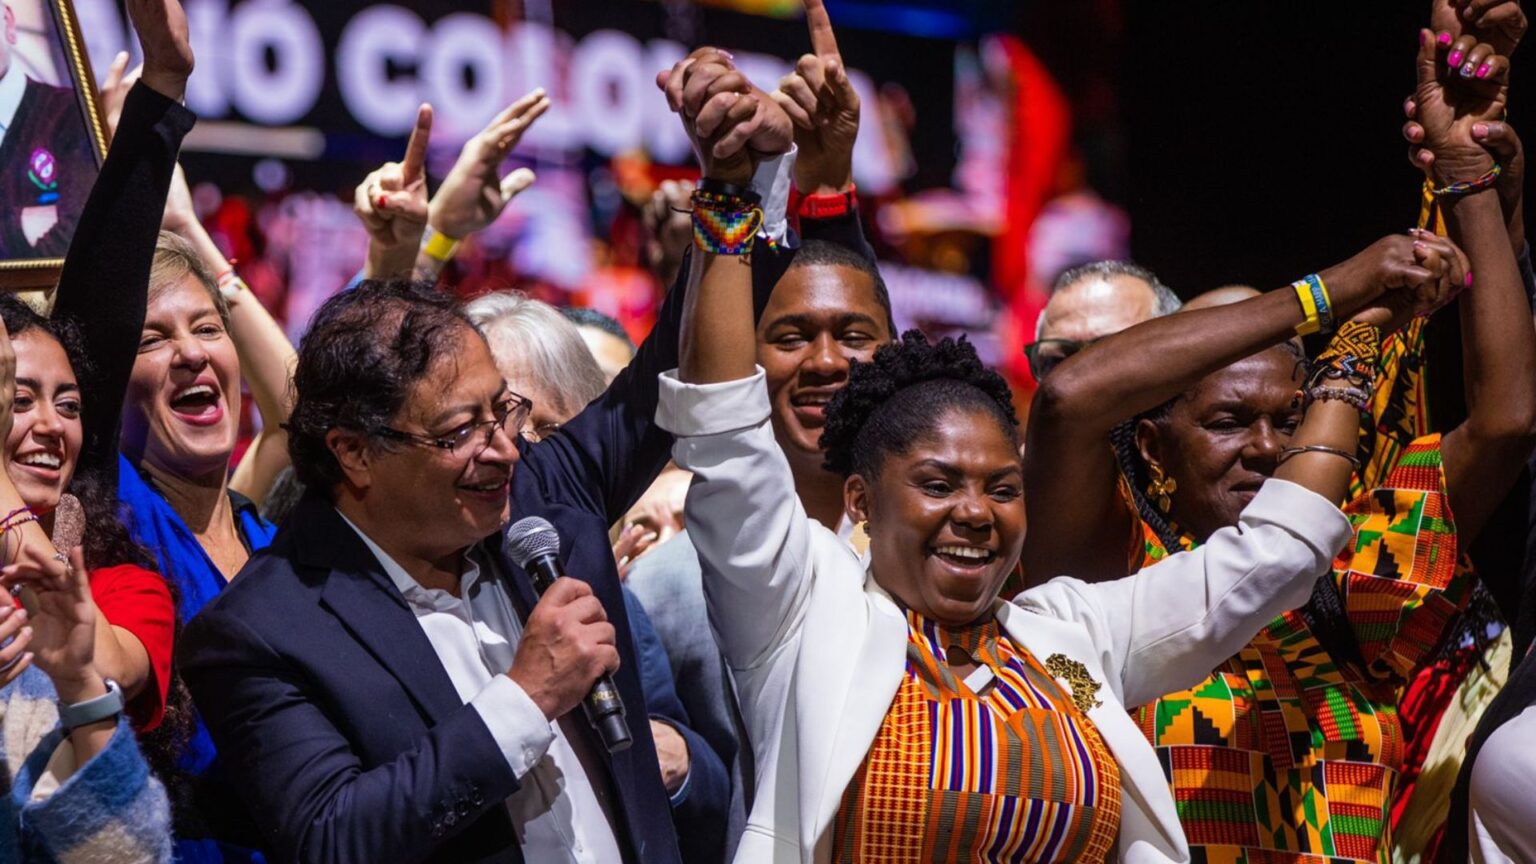 Francia Márquez, nouvelle vice-présidente de la Colombie